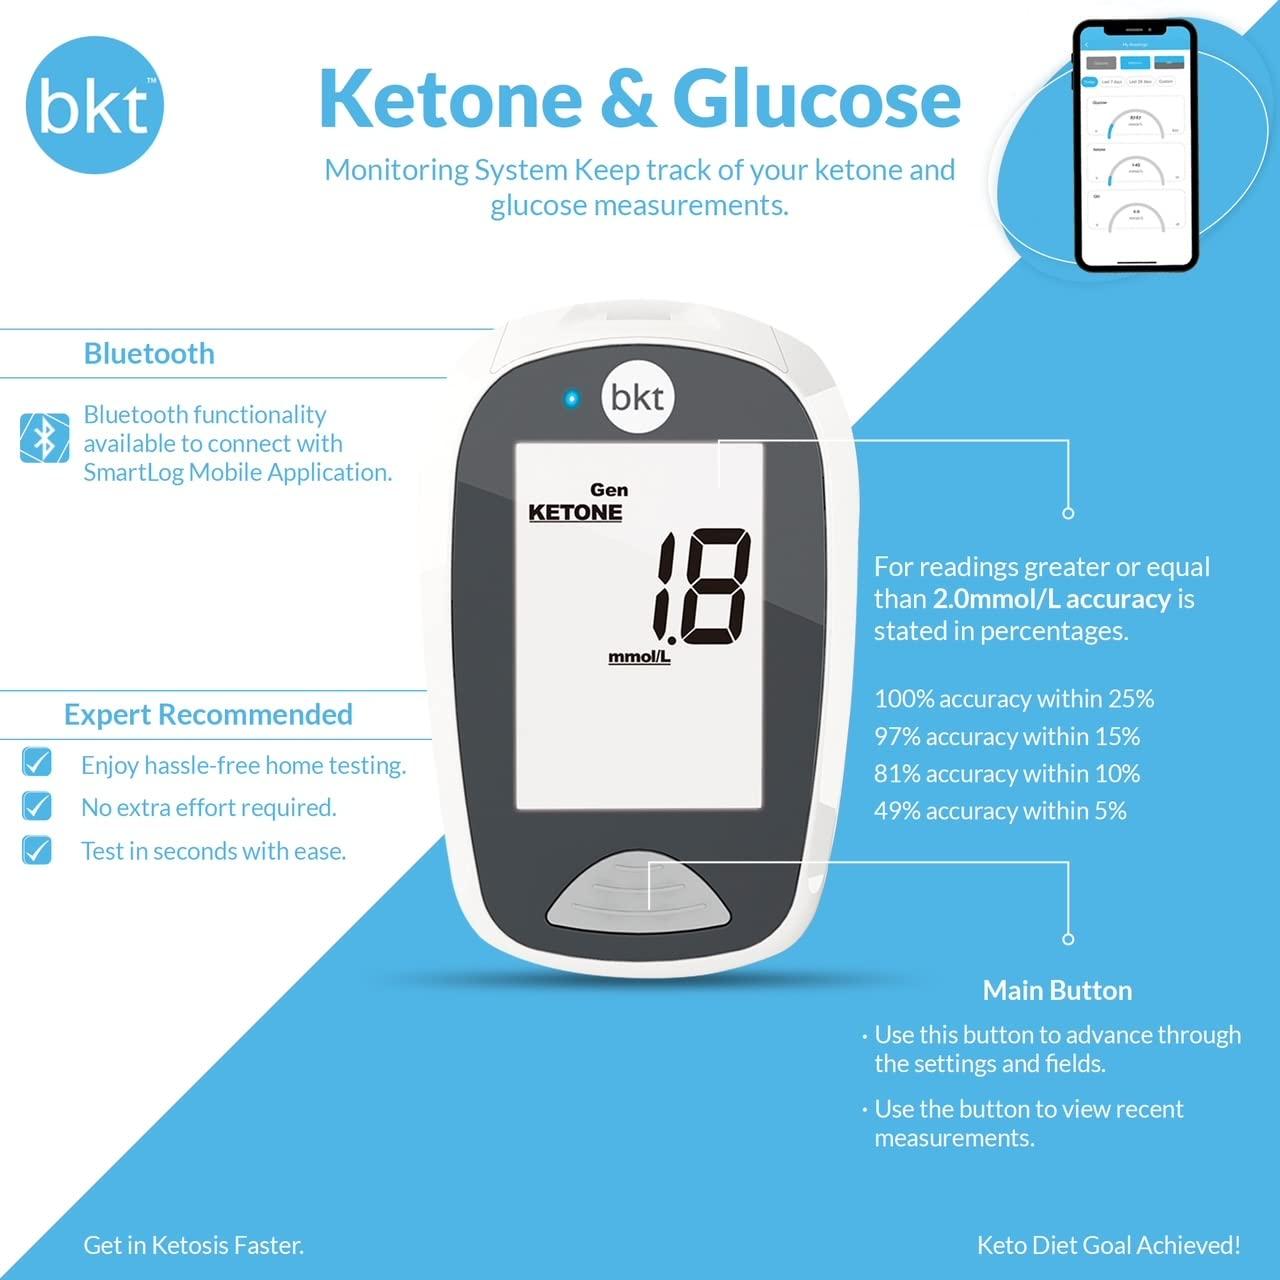 Keto Mojo GK+ Bluetooth Glucose & Ketone Testing Kit